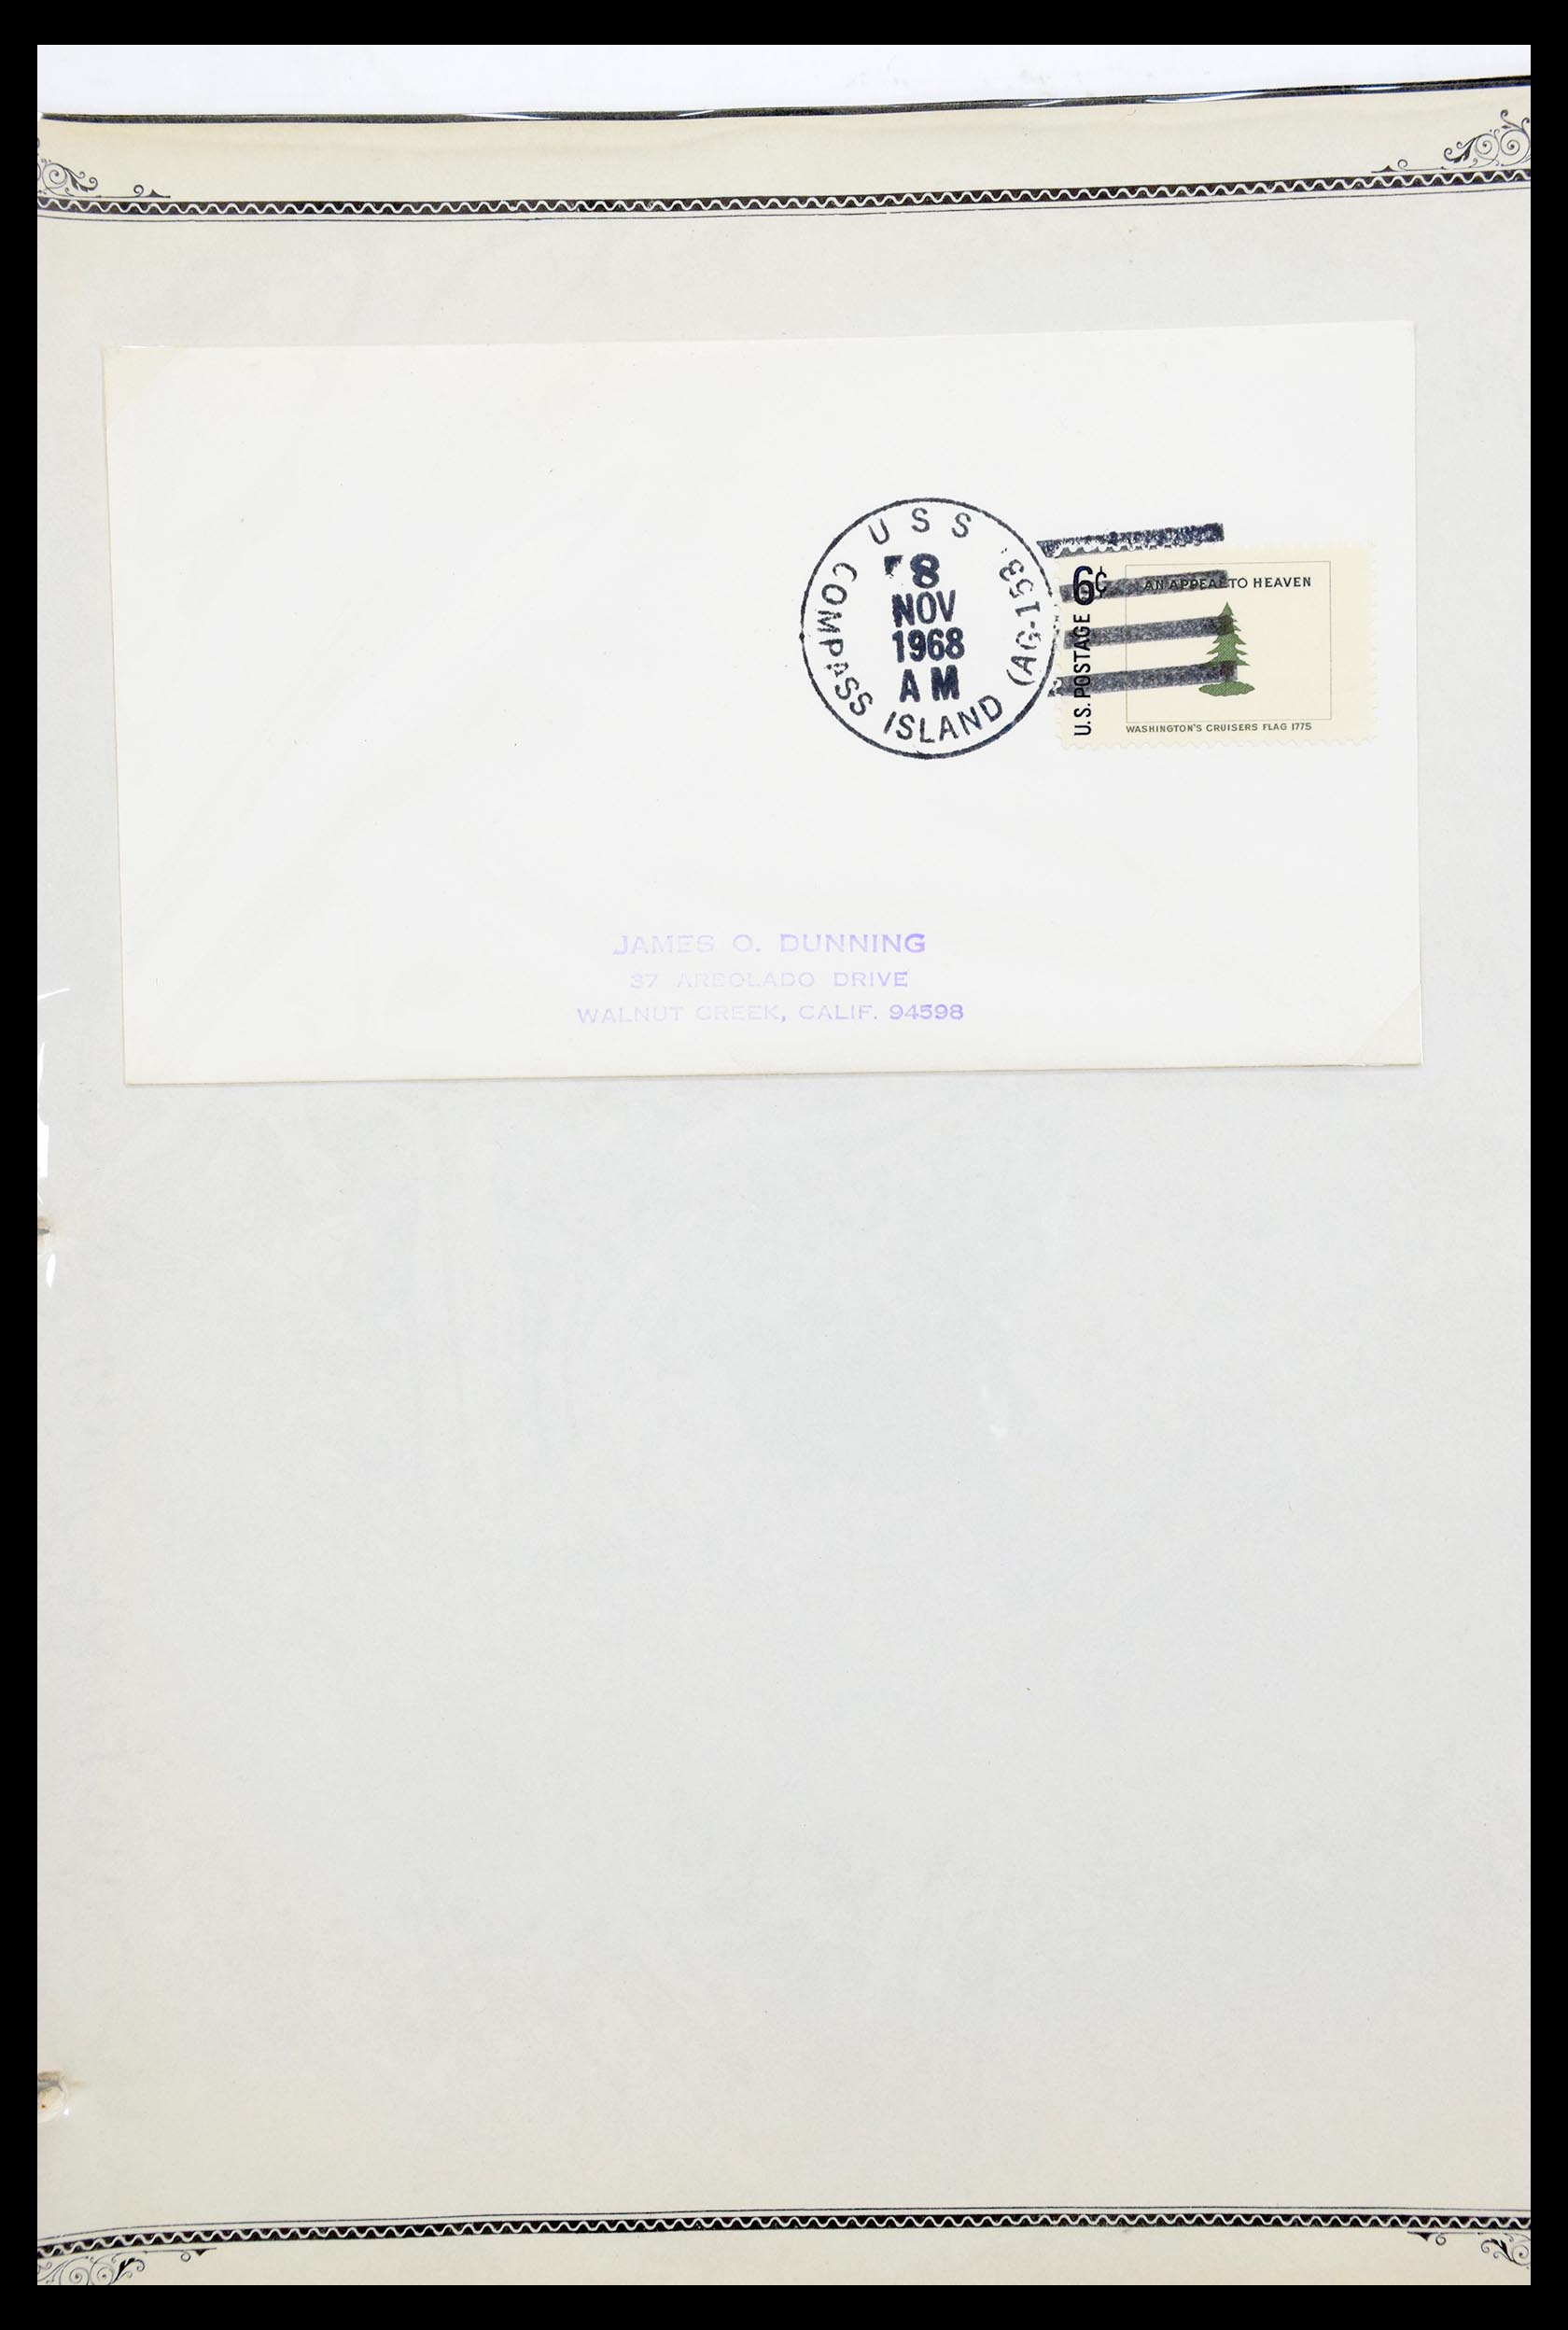 30341 034 - 30341 USA scheepspost brieven 1930-1970.